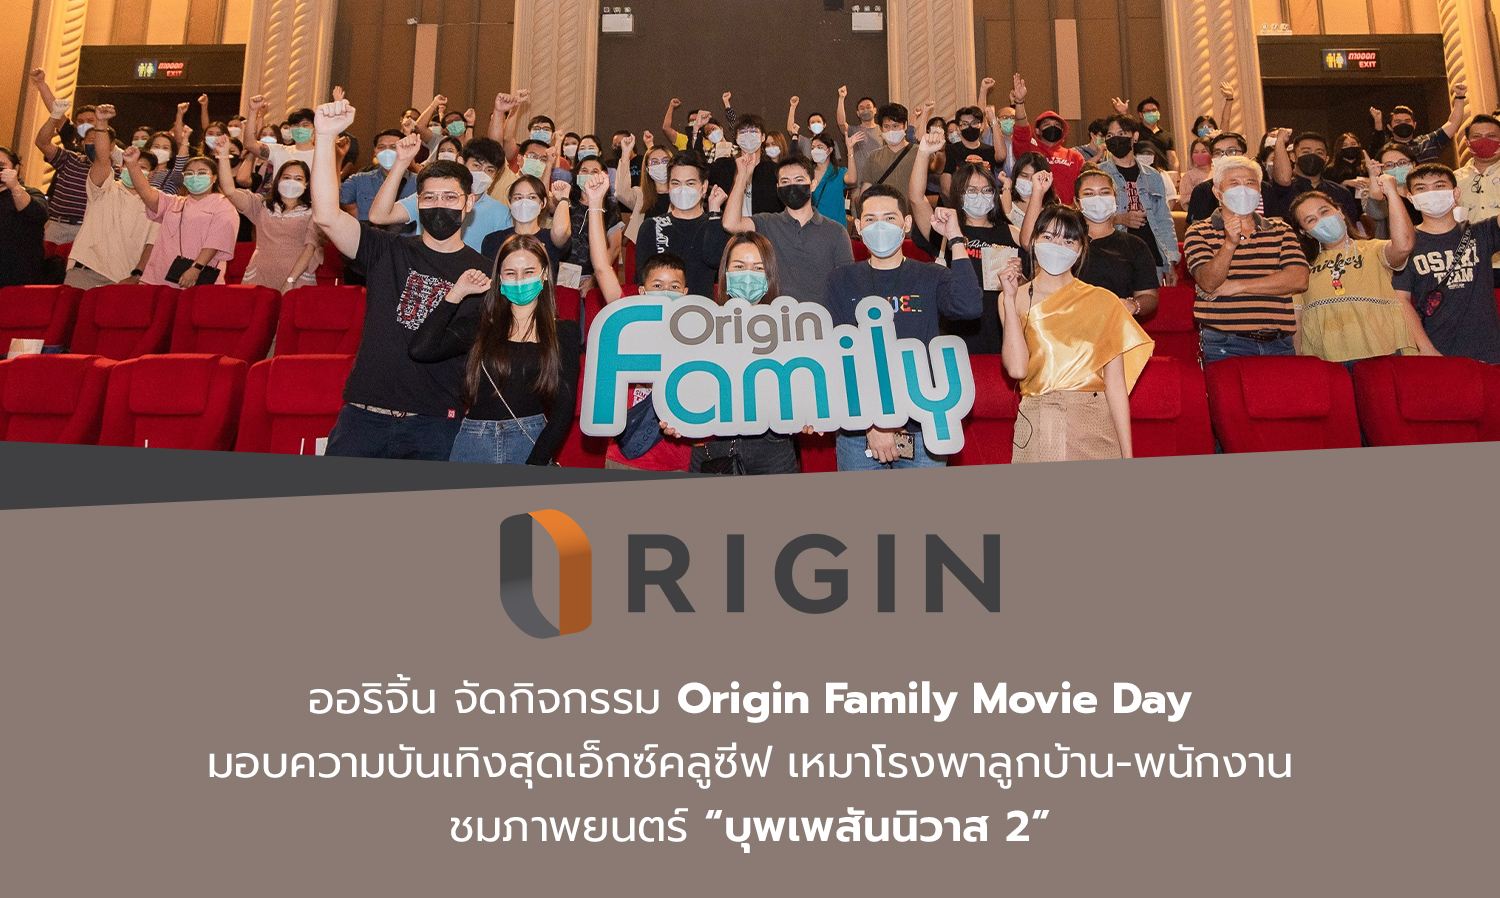 ออริจิ้น จัดกิจกรรม Origin Family Movie Day มอบความบันเทิงสุดเอ็กซ์คลูซีฟ เหมาโรงพาลูกบ้าน-พนักงานชมภาพยนตร์ “บุพเพสันนิวาส 2”